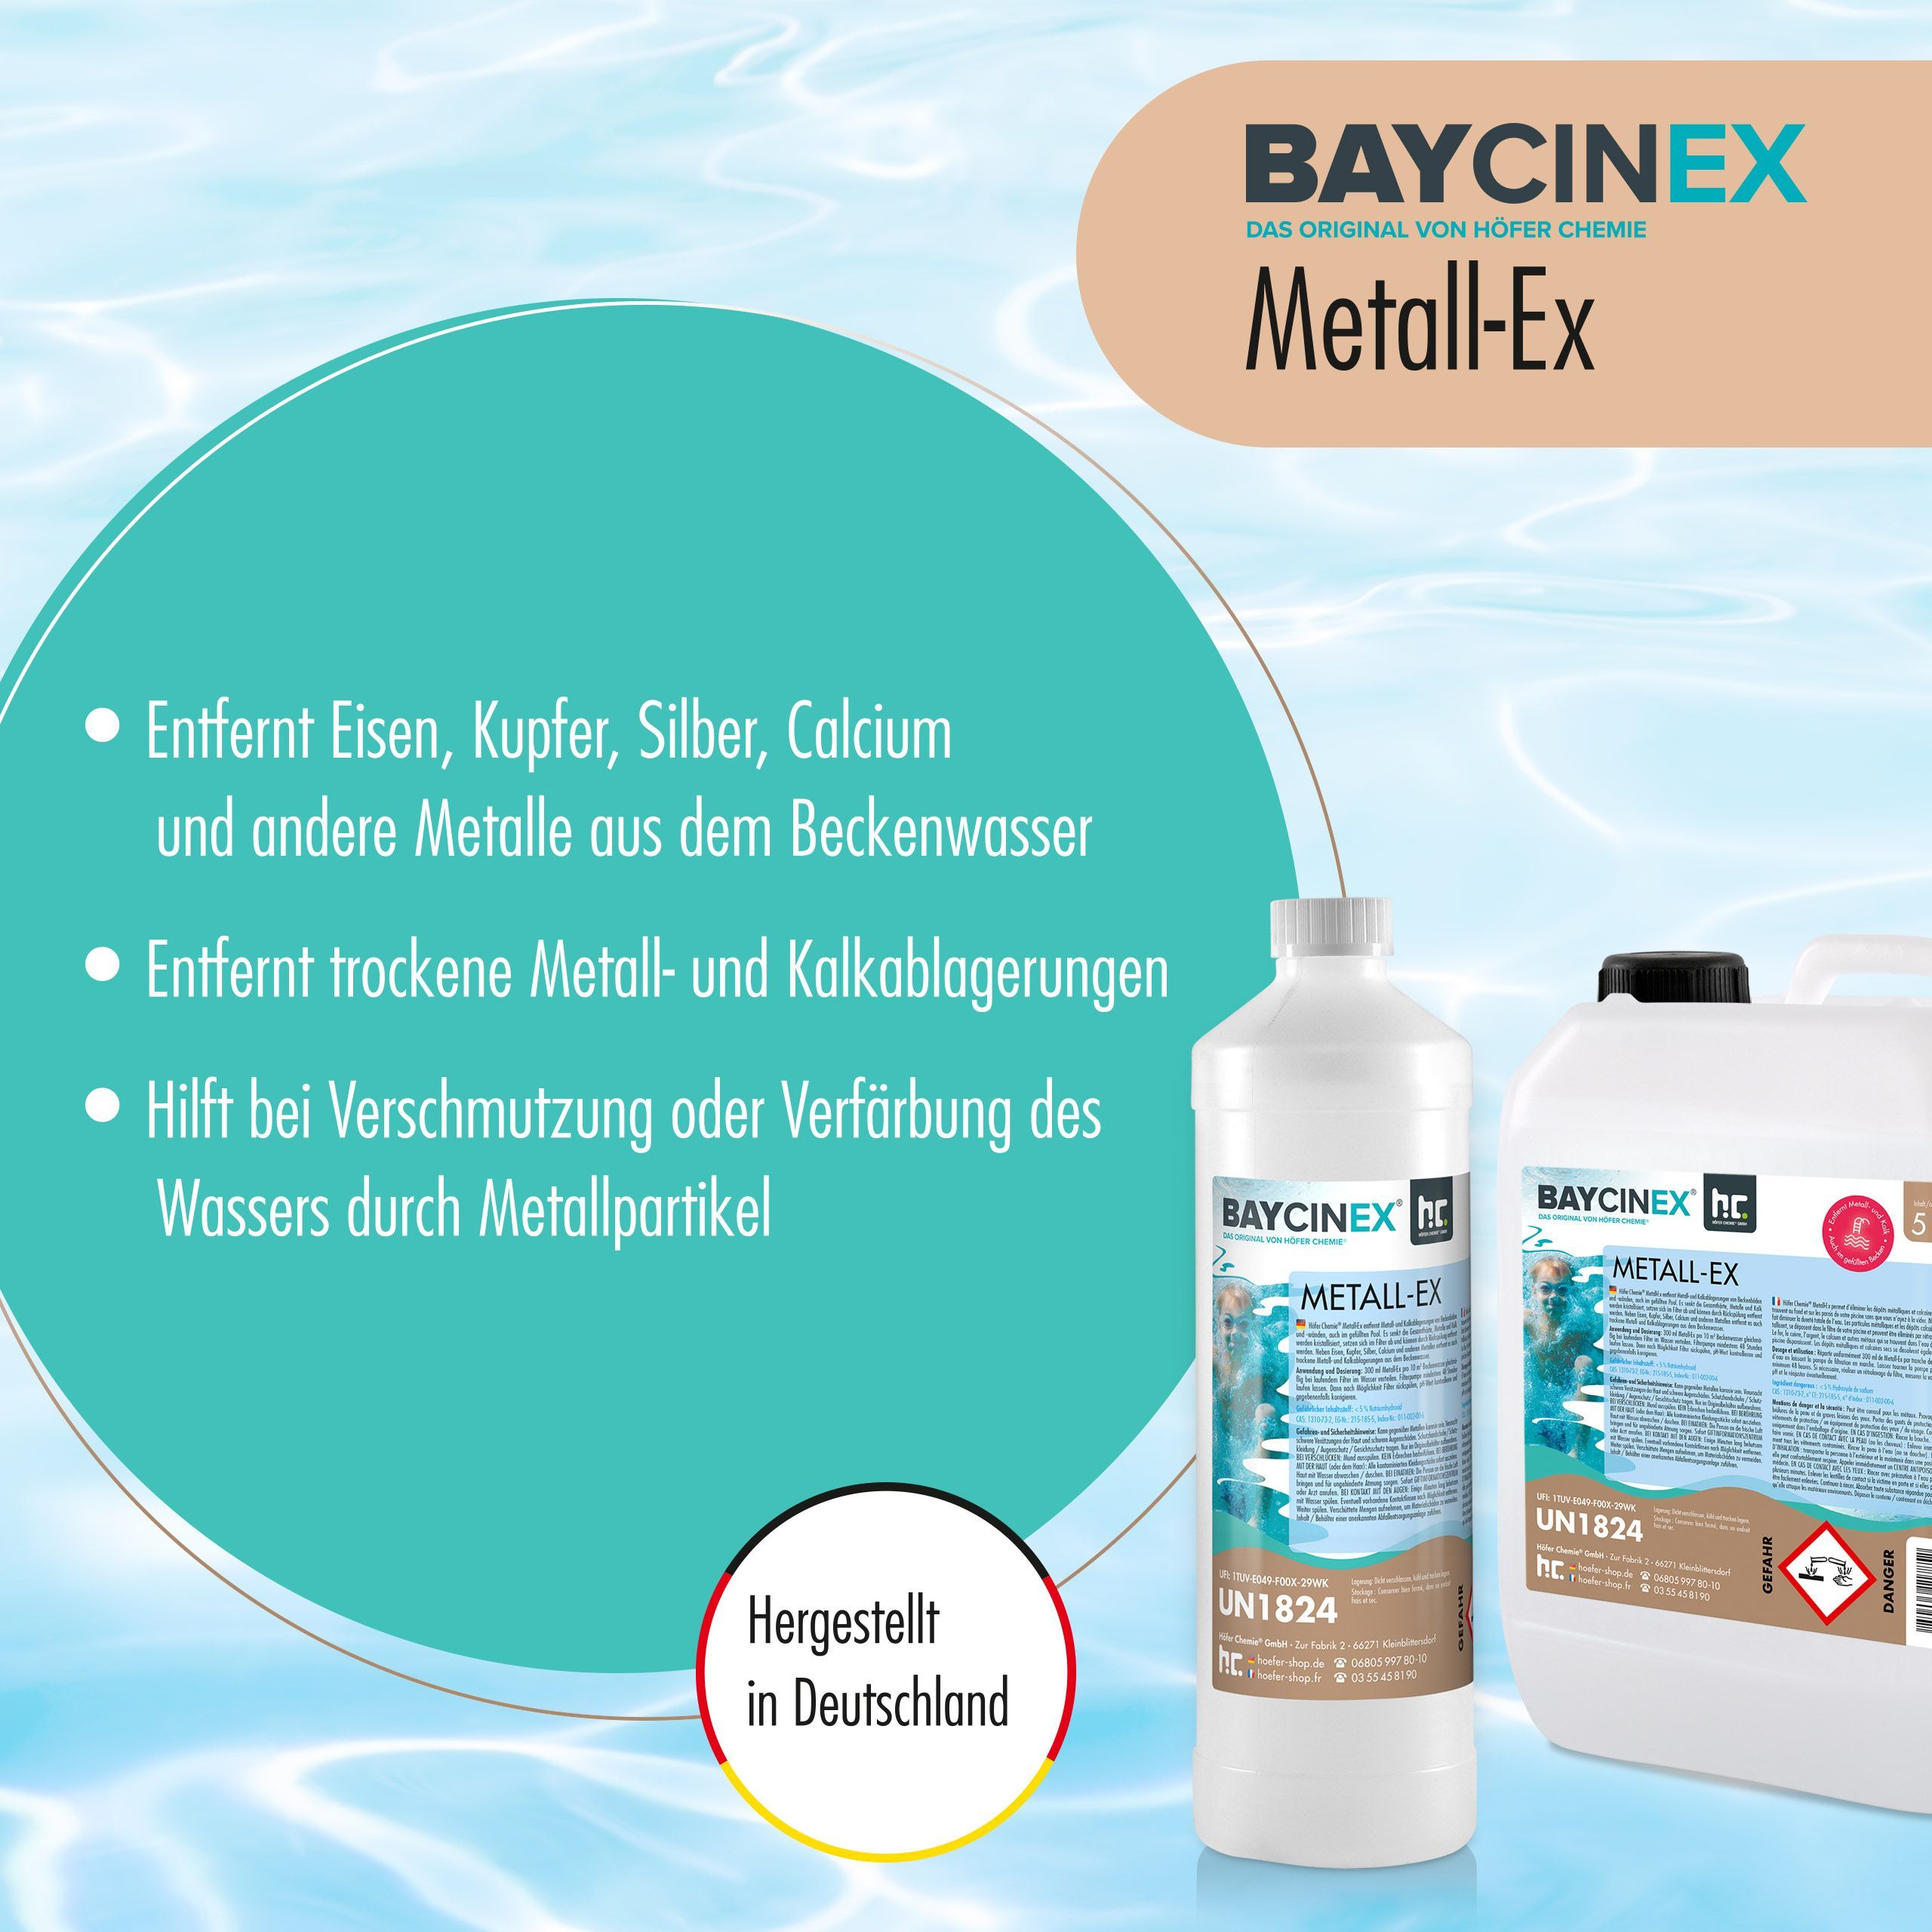 1 L BAYCINEX® Metall-Ex in handlicher Flasche